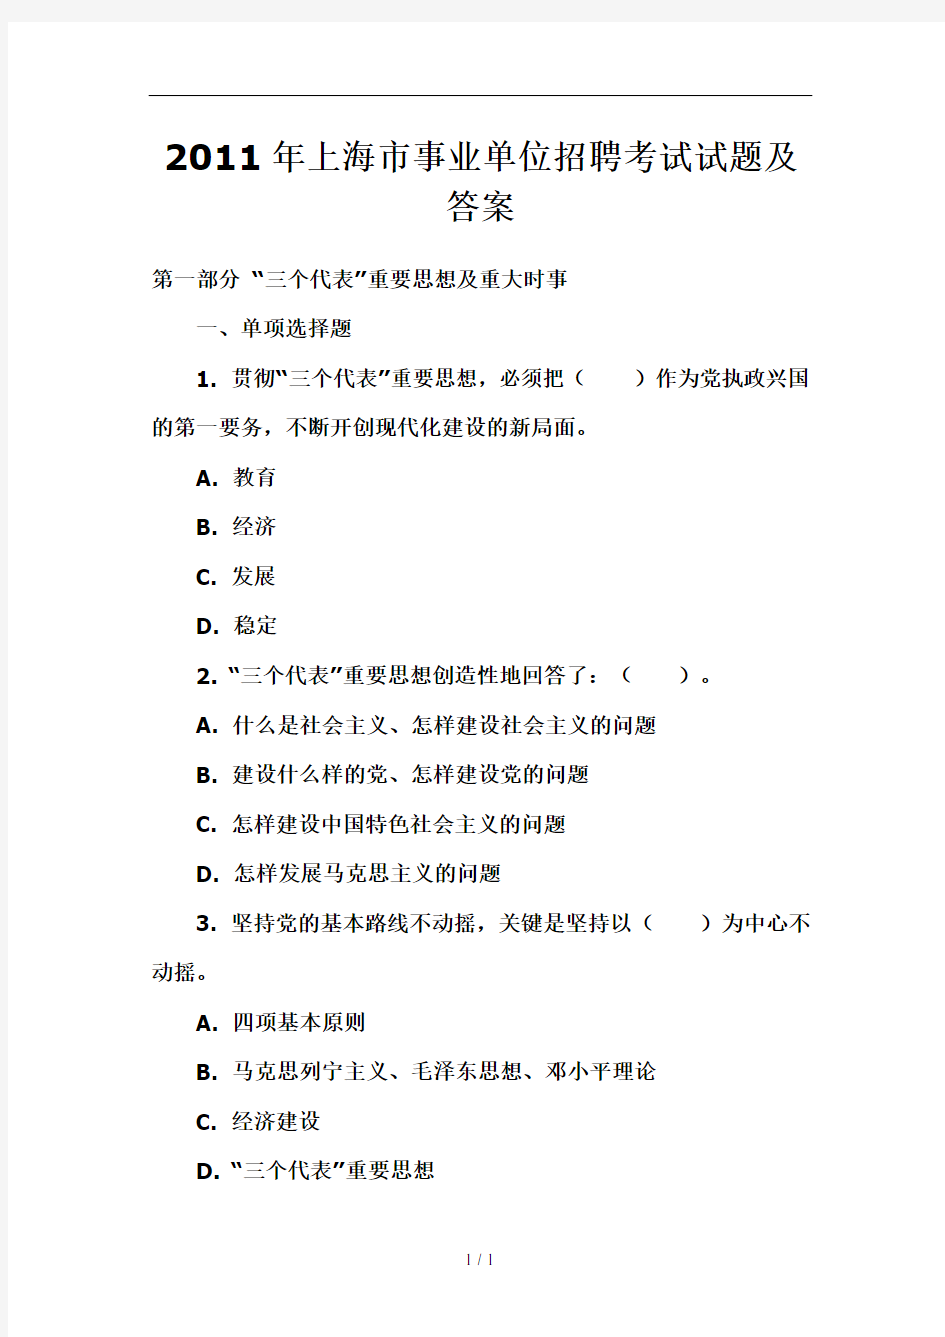 上海市事业单位招聘考试试题及复习资料